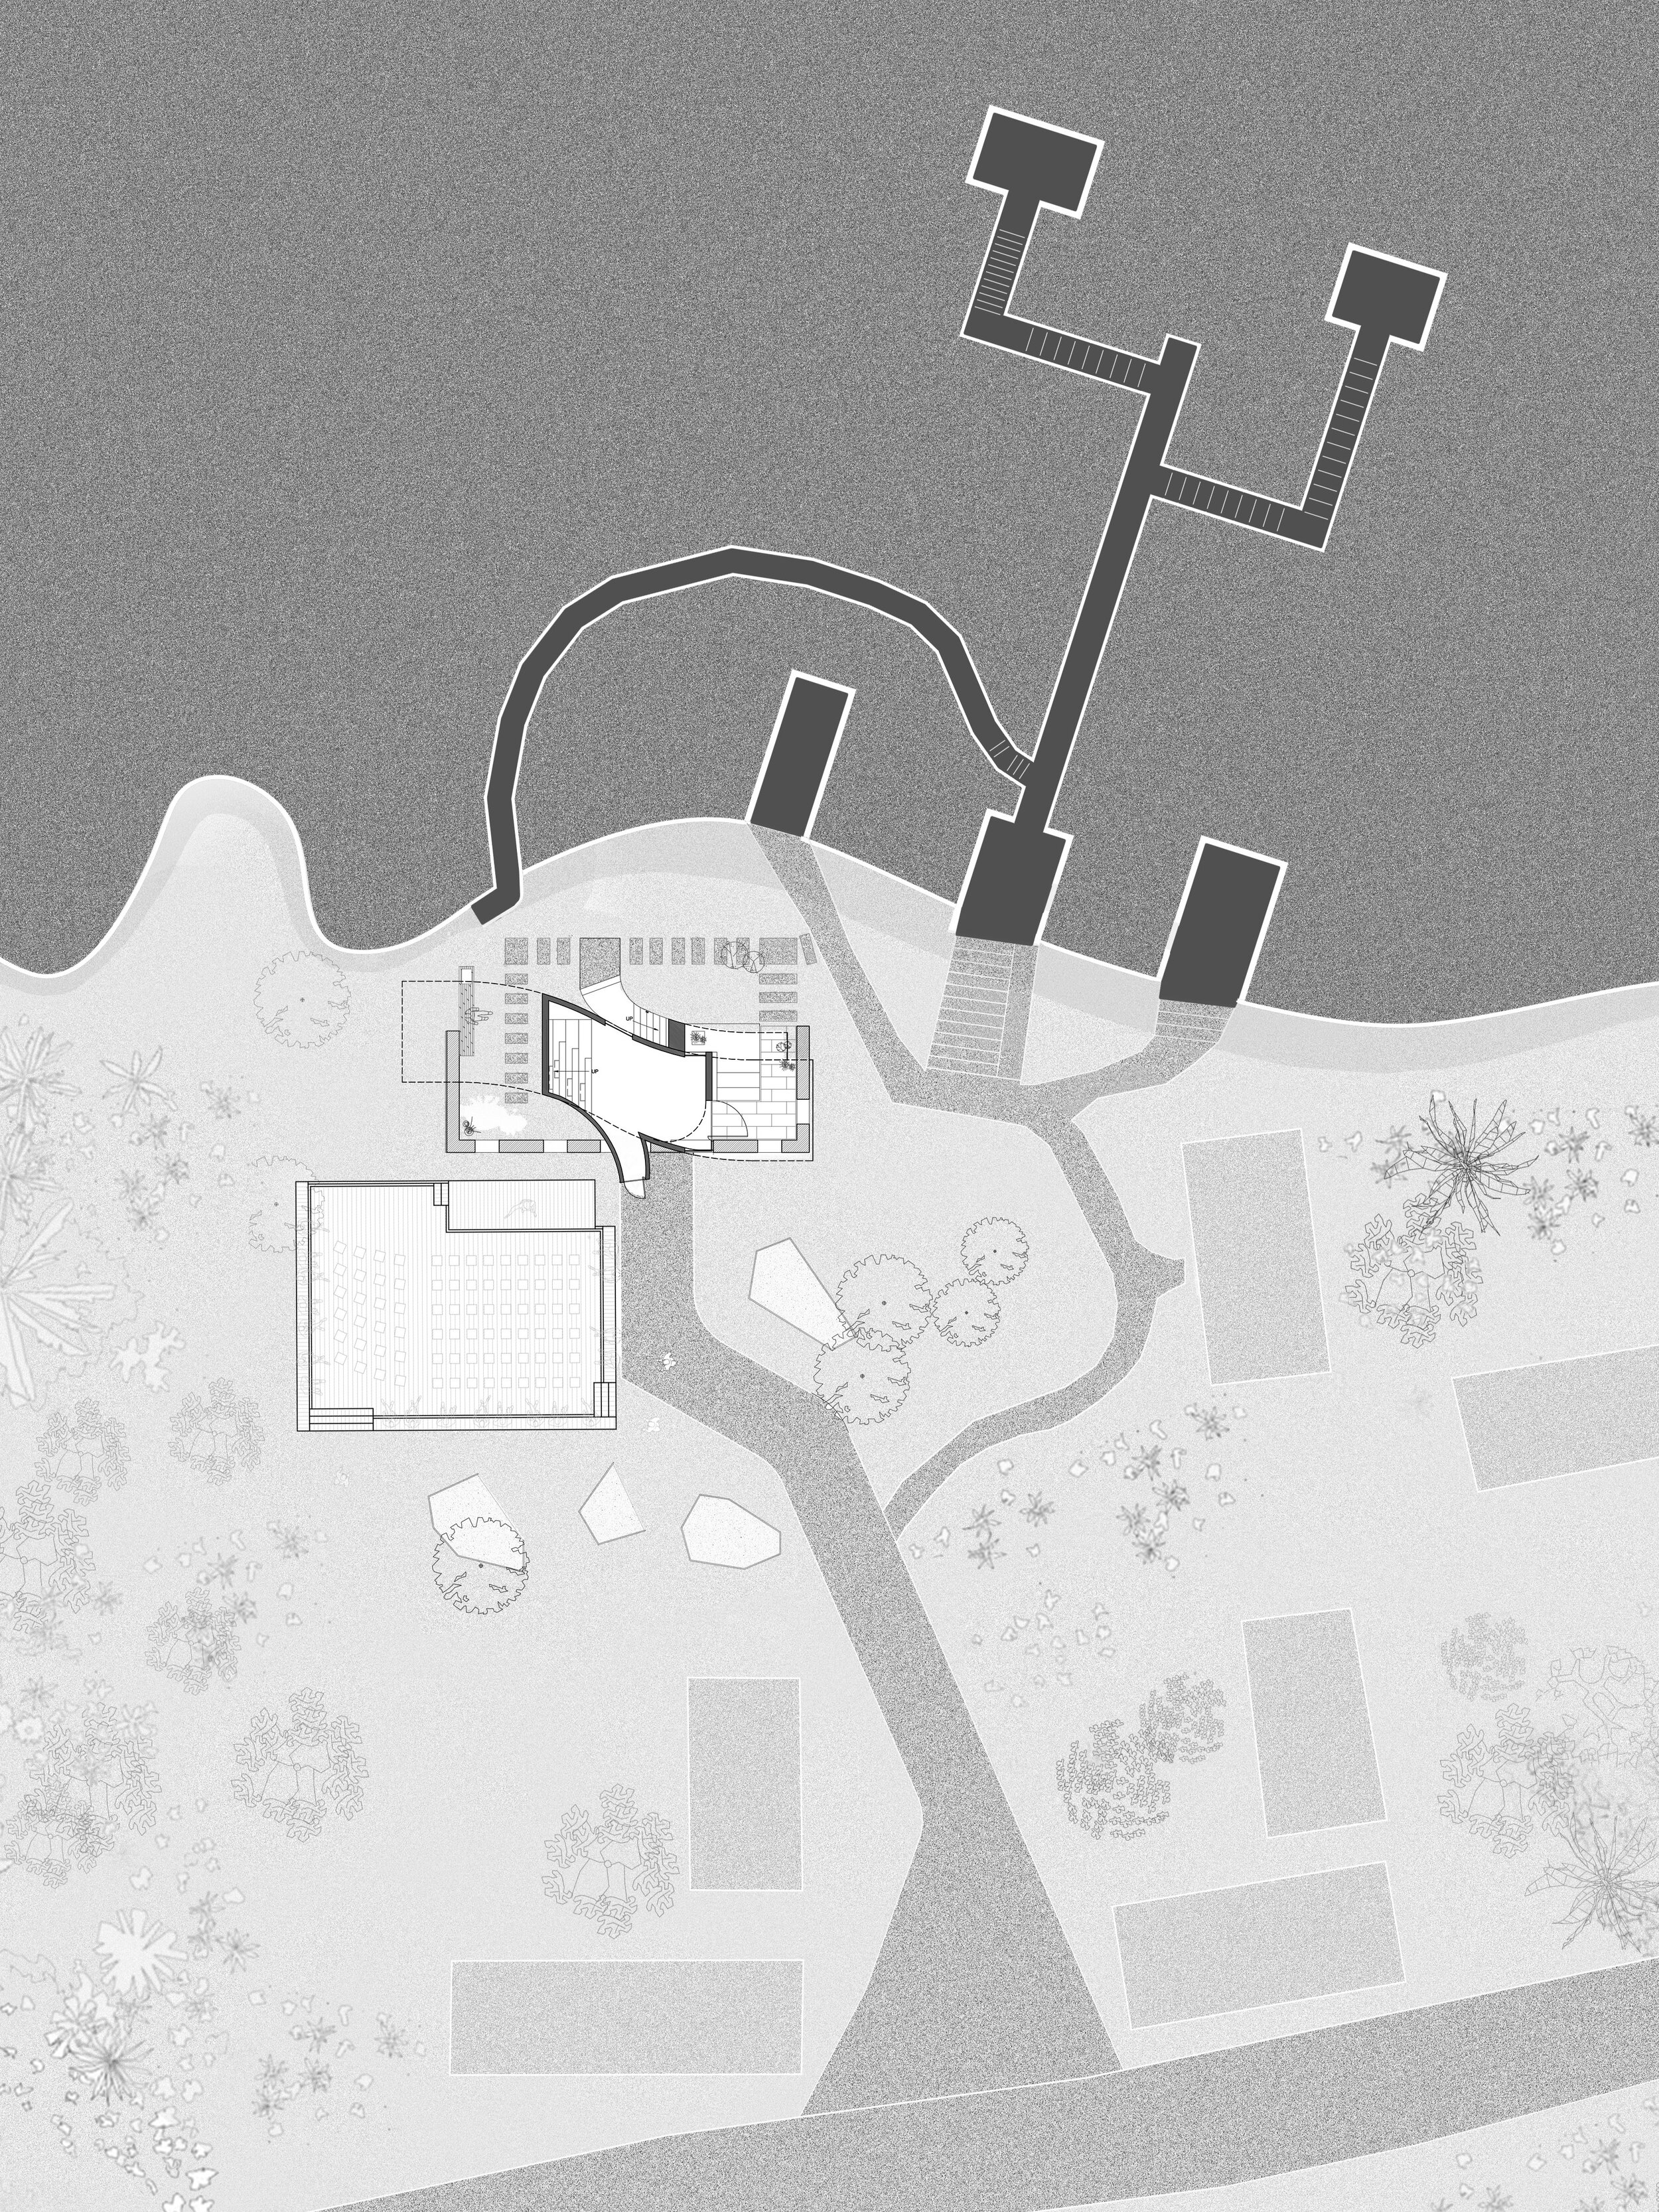 02 Ground Floor Site Plan.jpg